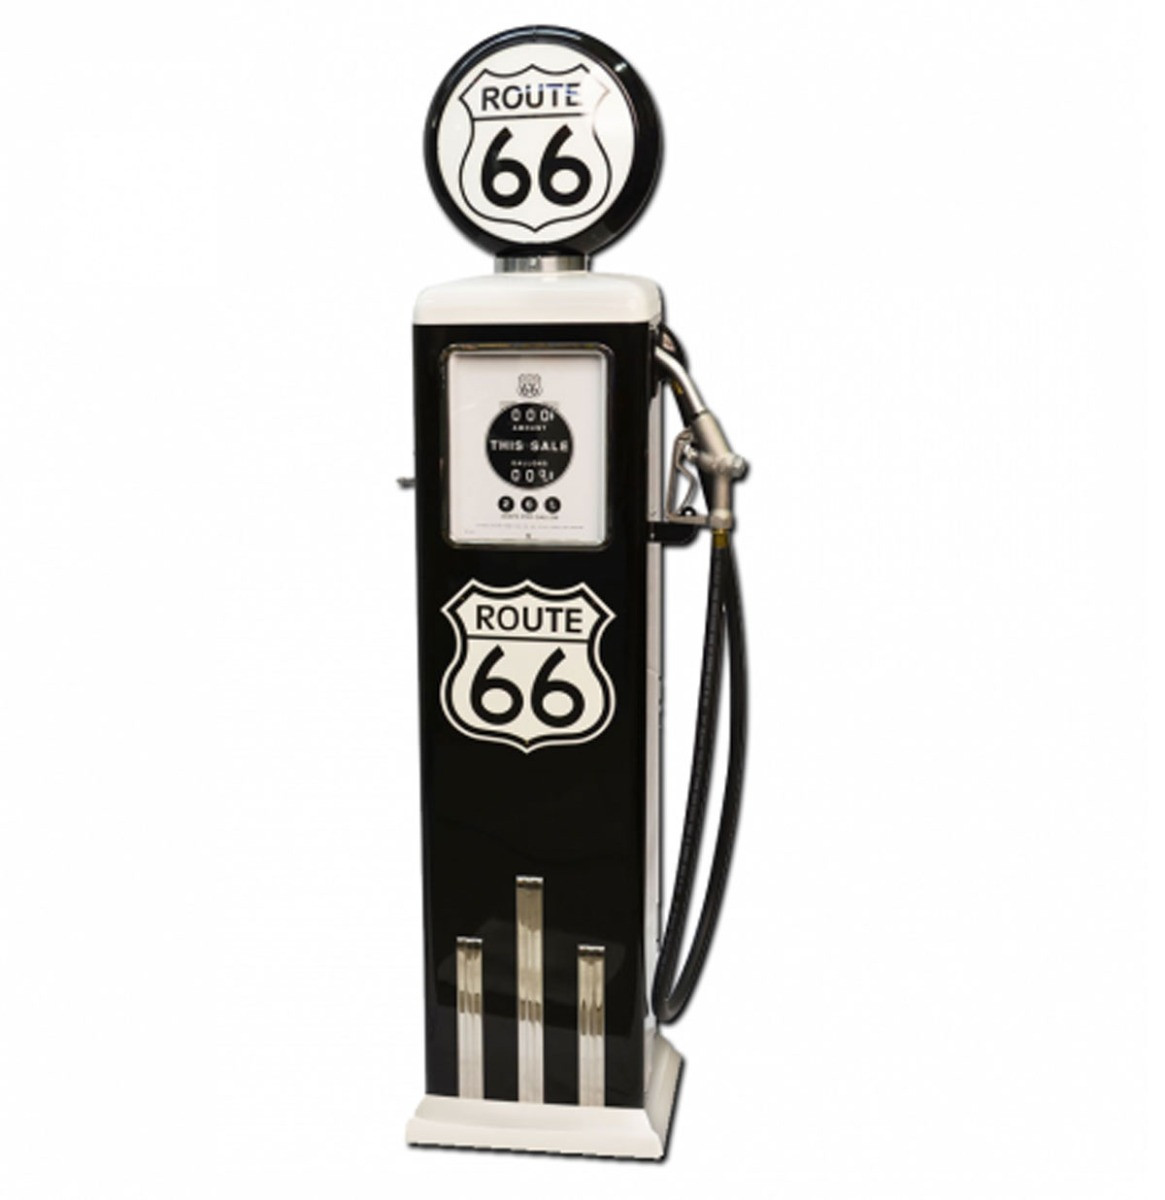 Route 66 8 Ball Elektrische Benzinepomp Met Voet - Zwart & Wit - Reproductie